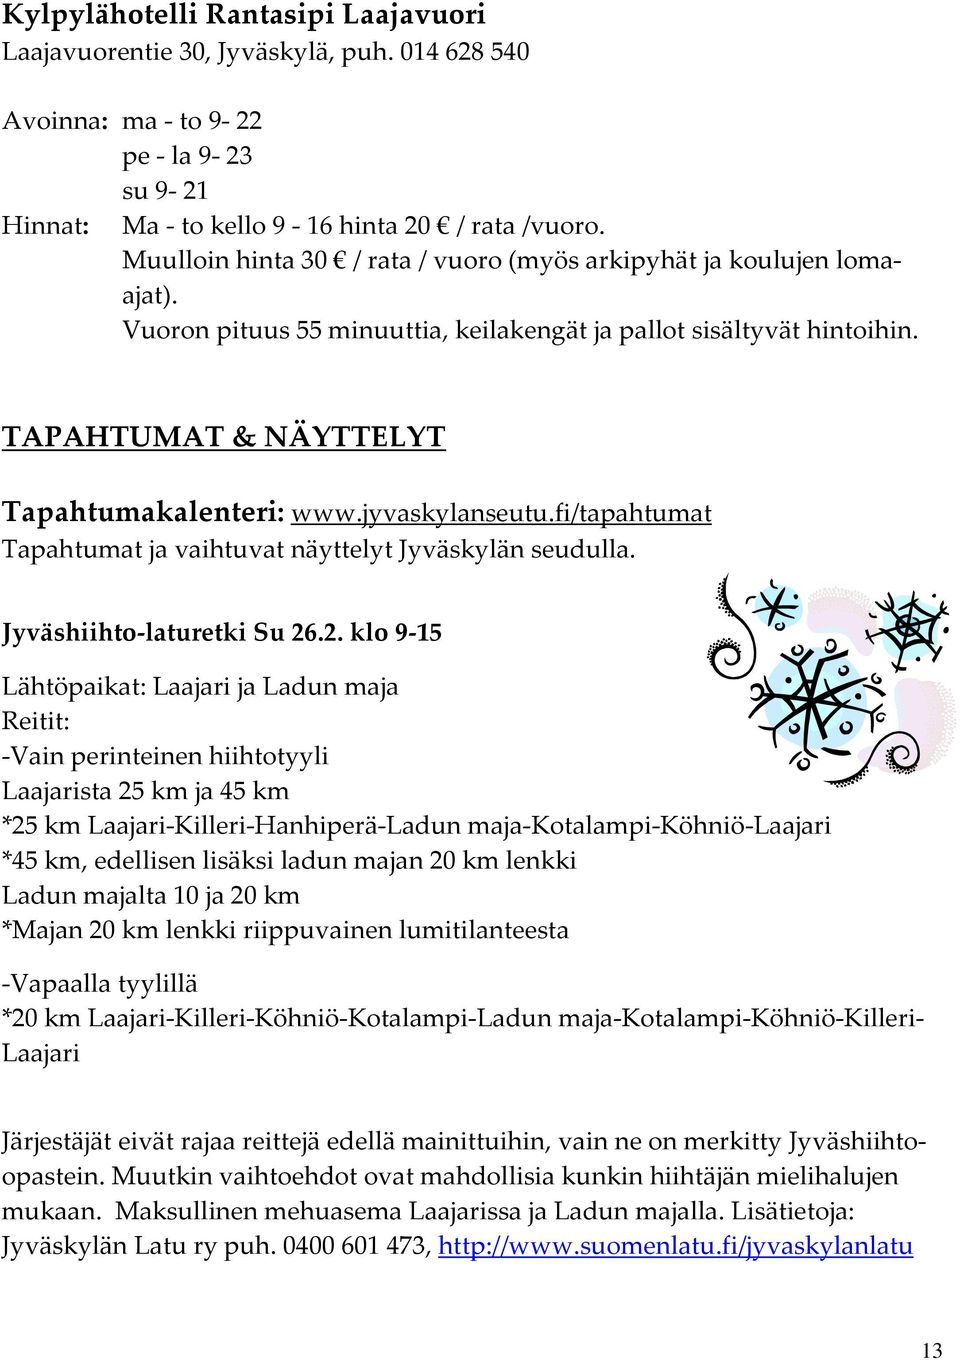 jyvaskylanseutu.fi/tapahtumat Tapahtumat ja vaihtuvat näyttelyt Jyväskylän seudulla. Jyväshiihto-laturetki Su 26